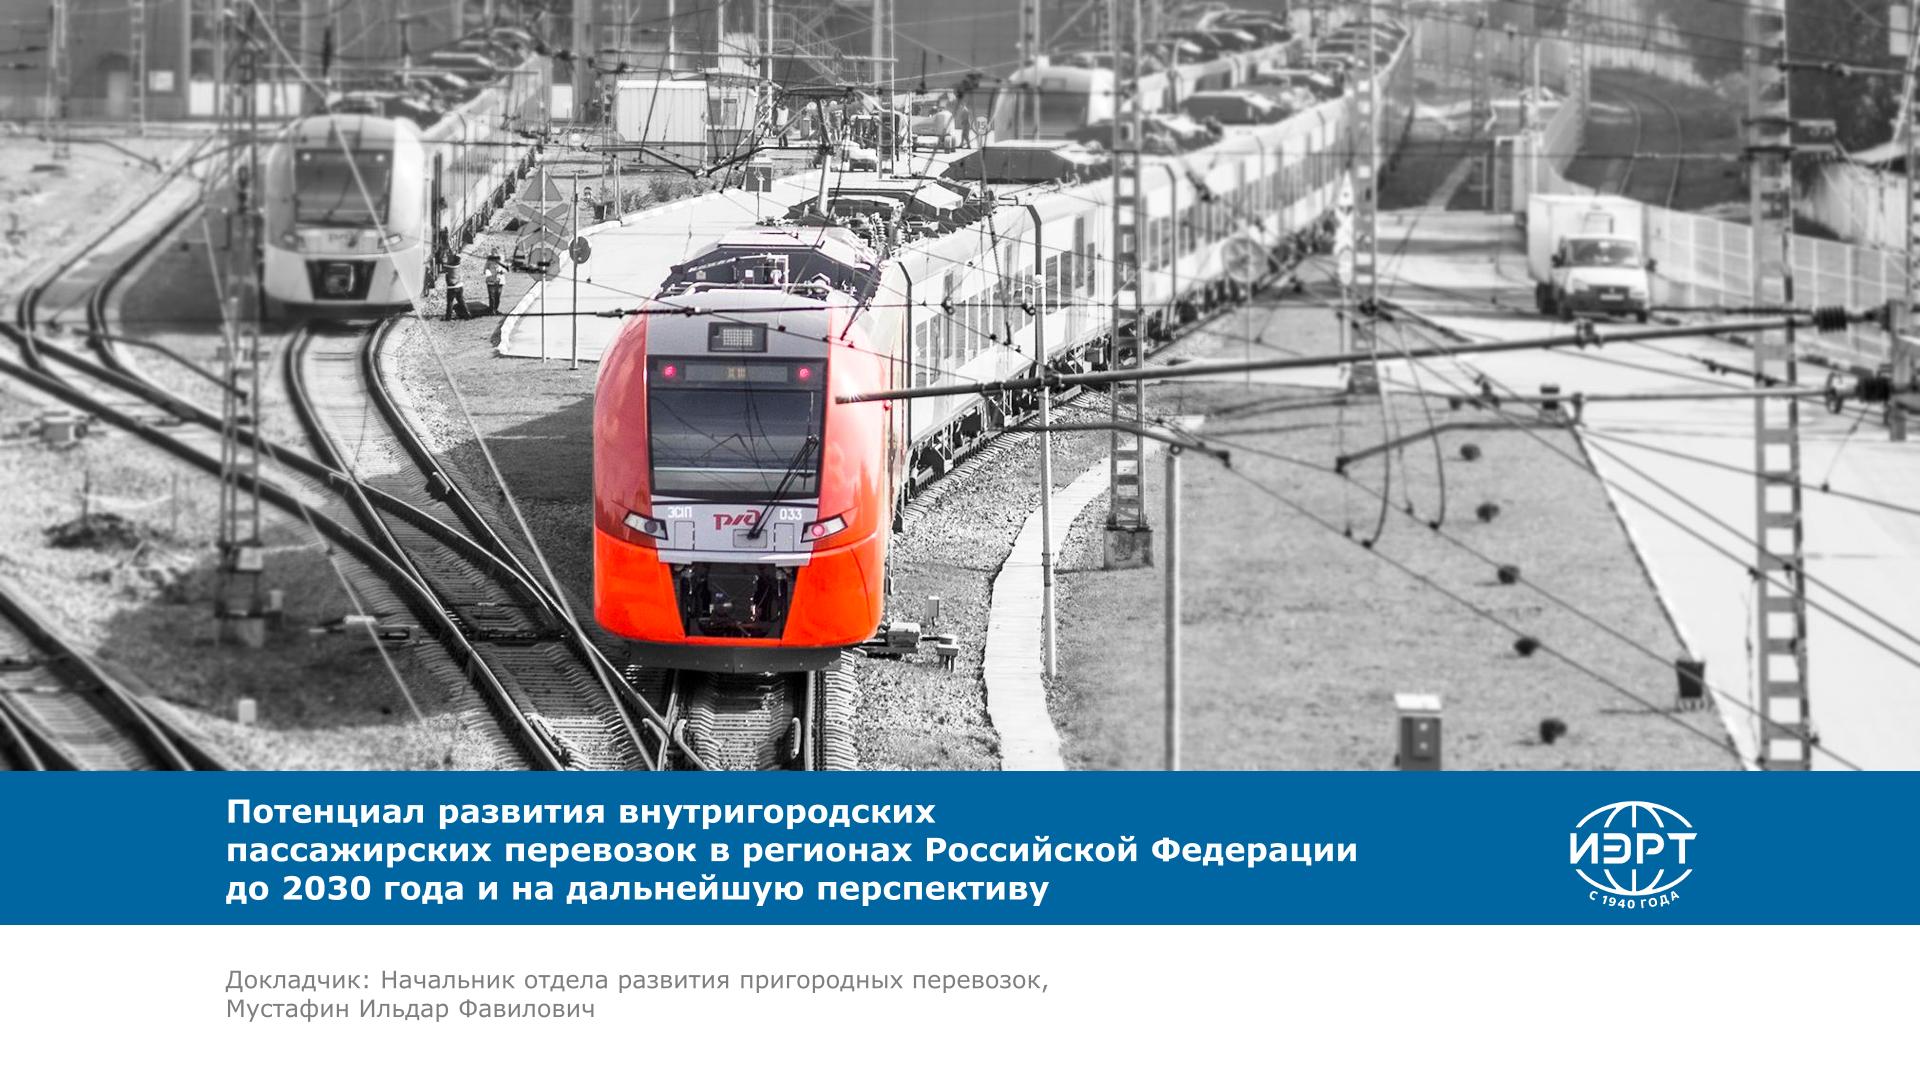 Потенциал развития внутригородских пассажирских перевозок в регионах Российской Федерации до 2030 года и на дальнейшую перспективу